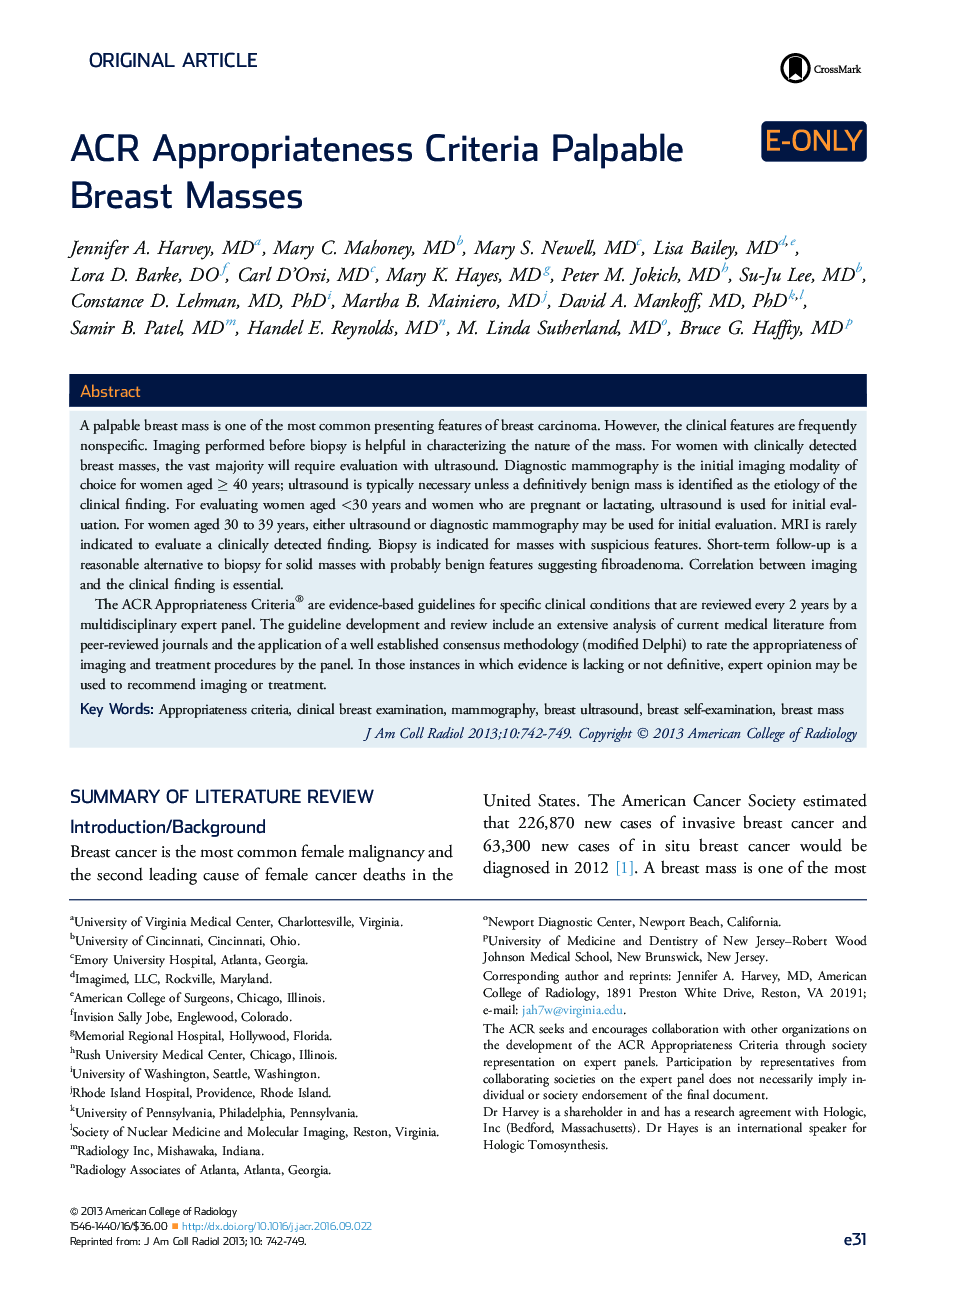 ACR Appropriateness Criteria Palpable Breast Masses